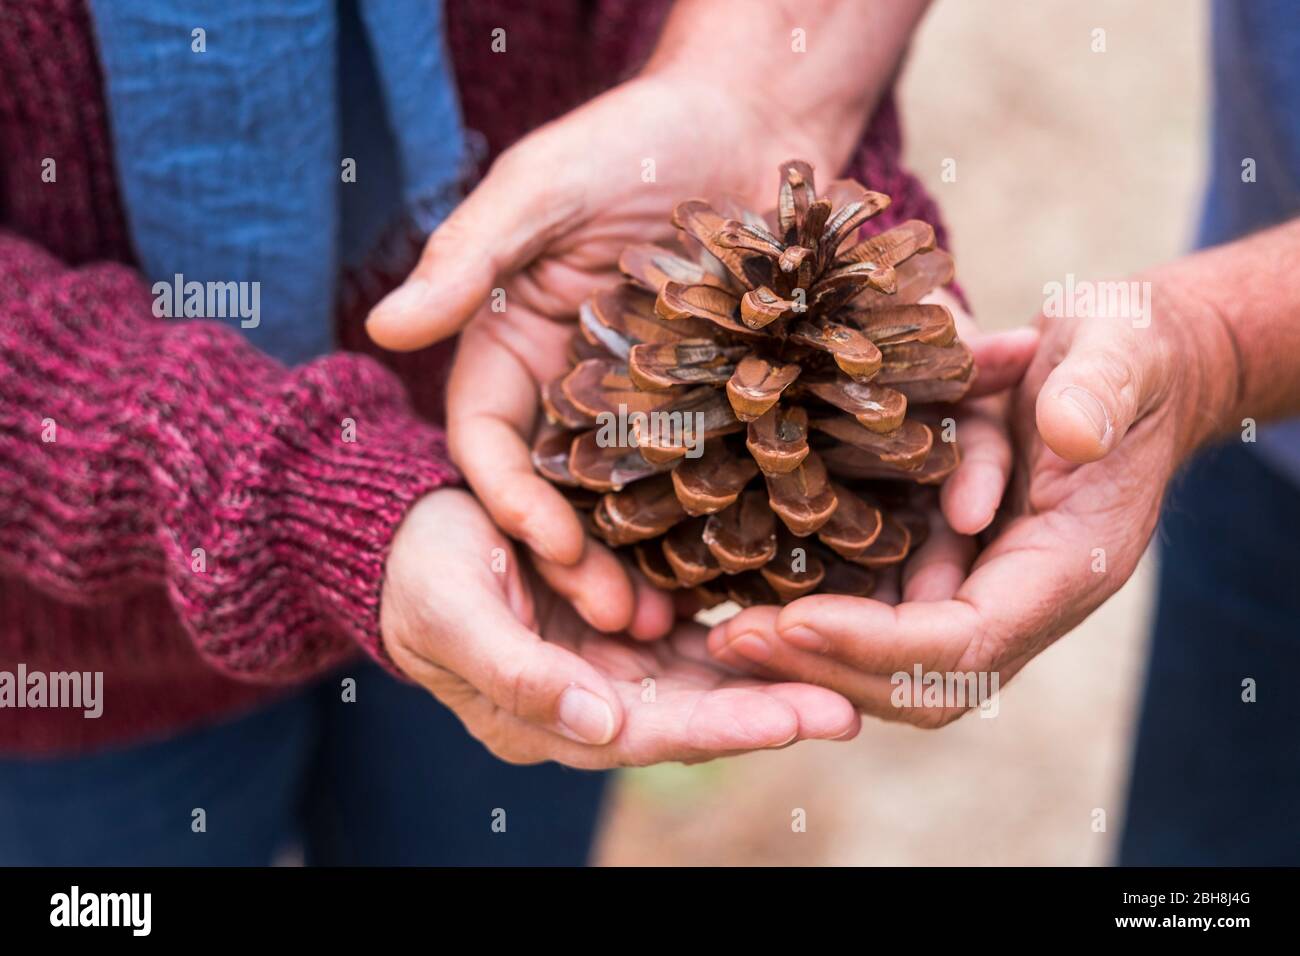 Paar der kaukasischen Hände nehmen und bewahren ein Pine Cone zusammen - sanft und freundlich Menschen mit der Natur, eine neue Welt aufzubauen Stockfoto